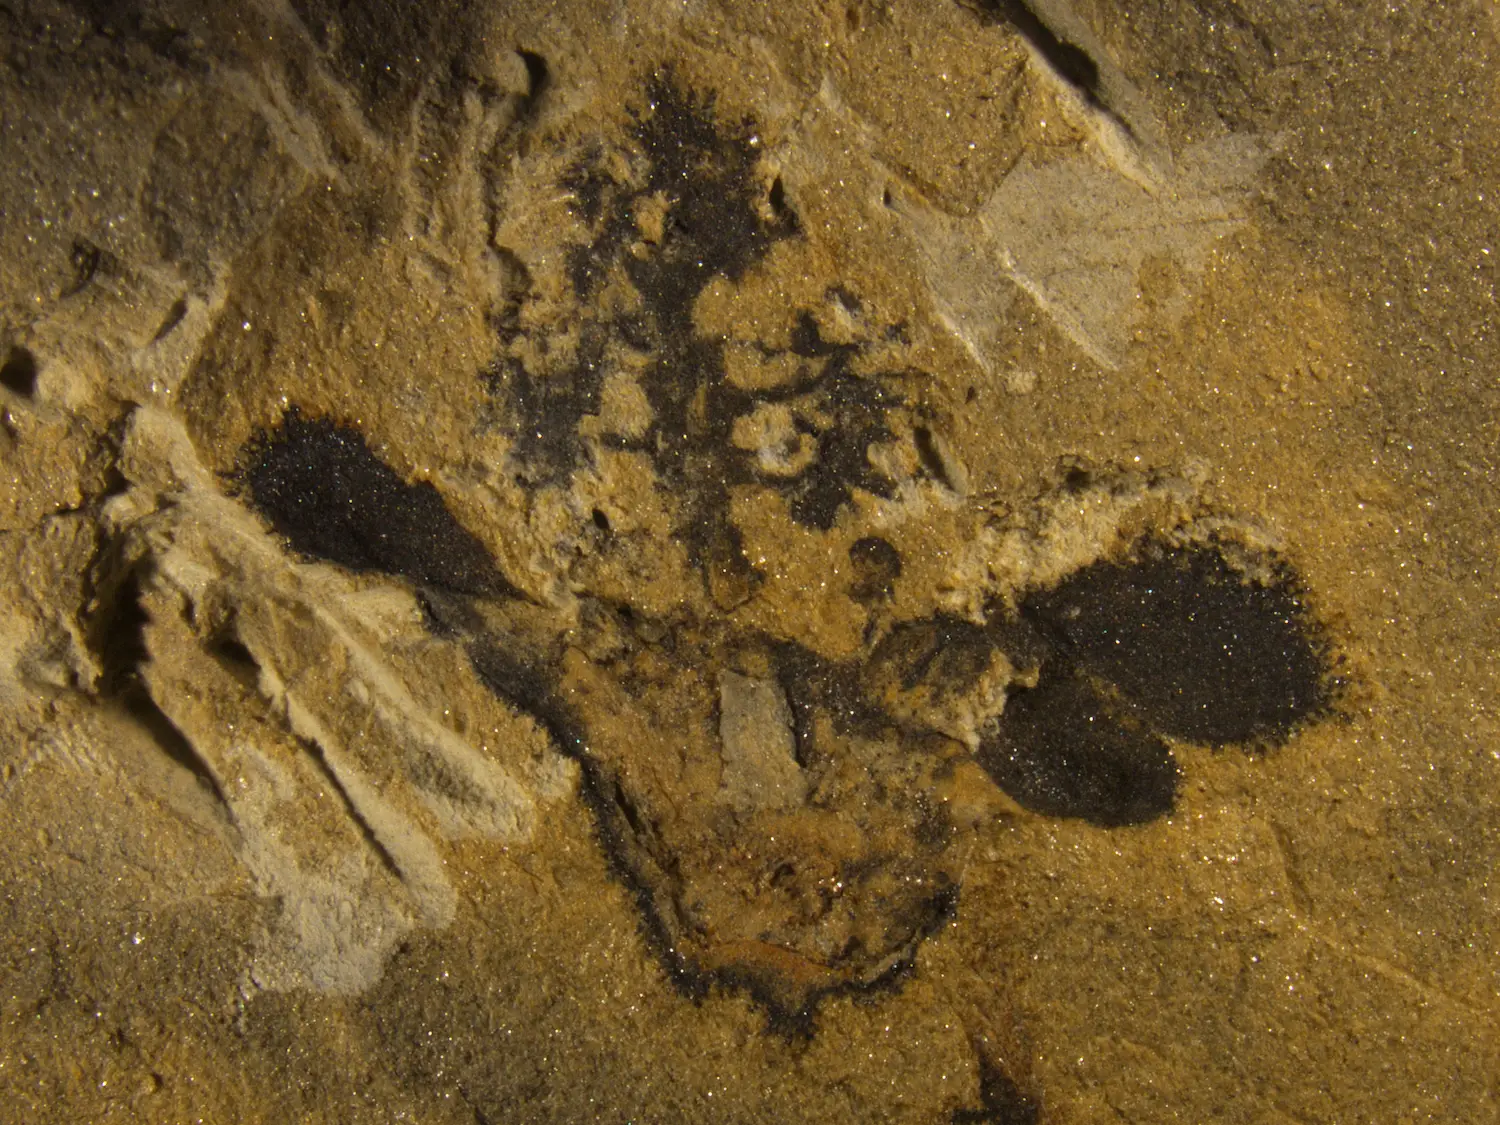 Ce fossile montre le profil d'une fleur, y compris son ovaire (en bas au centre), ses sépales et ses pétales (de chaque côté) et son style en forme d'arbre (en haut).